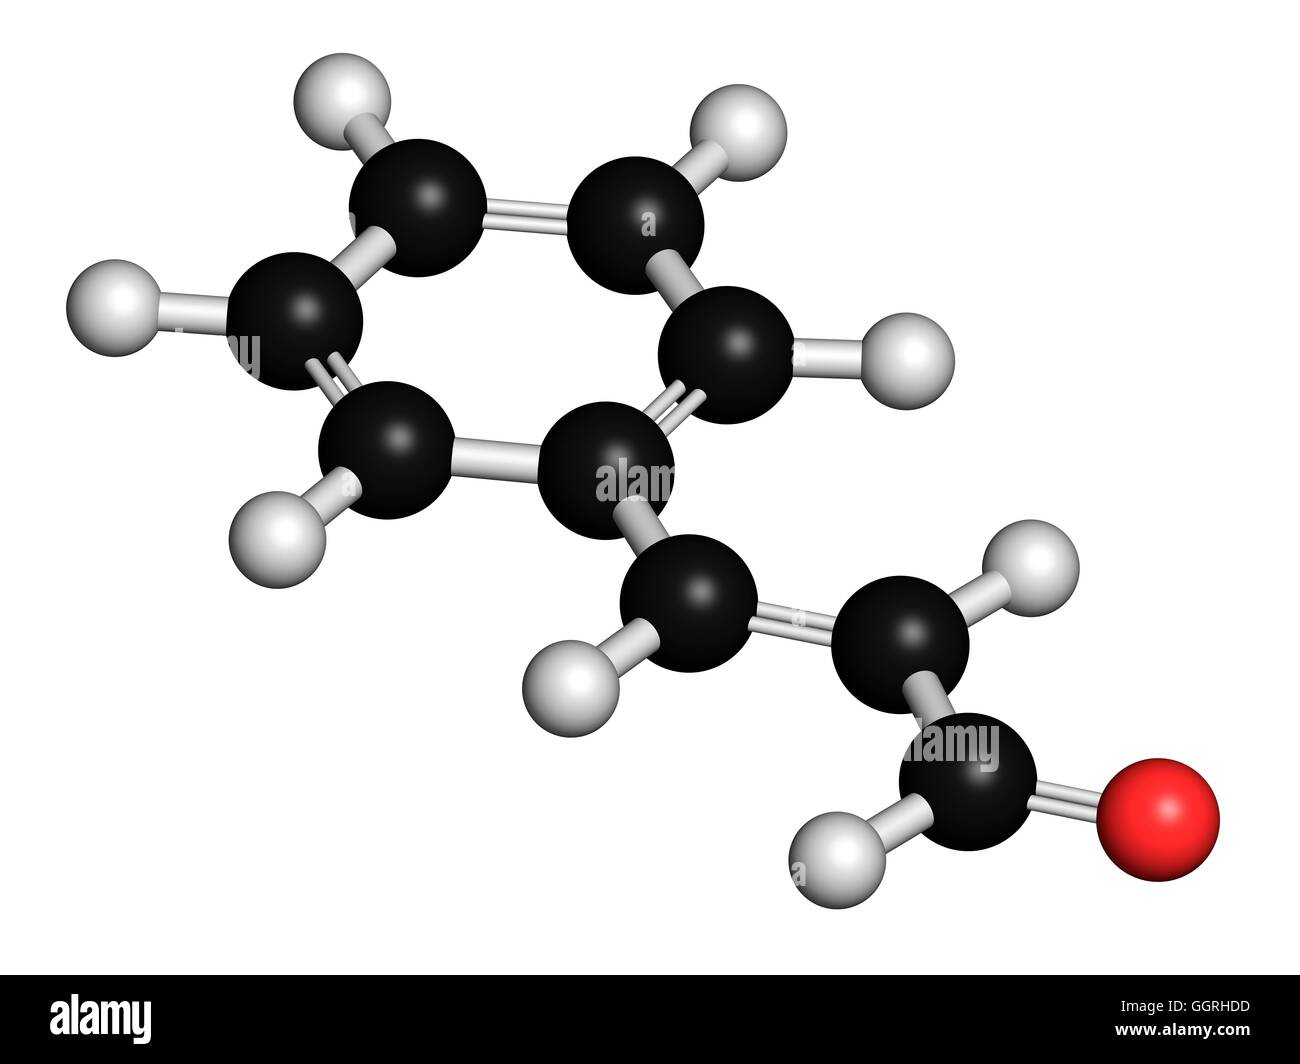 Cinnamaldehyde (aldehido cinámico) aroma de la canela, el modelo molecular.  Los átomos son representados como esferas con codificación de color  convencional: hidrógeno (blanco), el carbono (negro), el oxígeno (rojo).  Ilustración Fotografía de